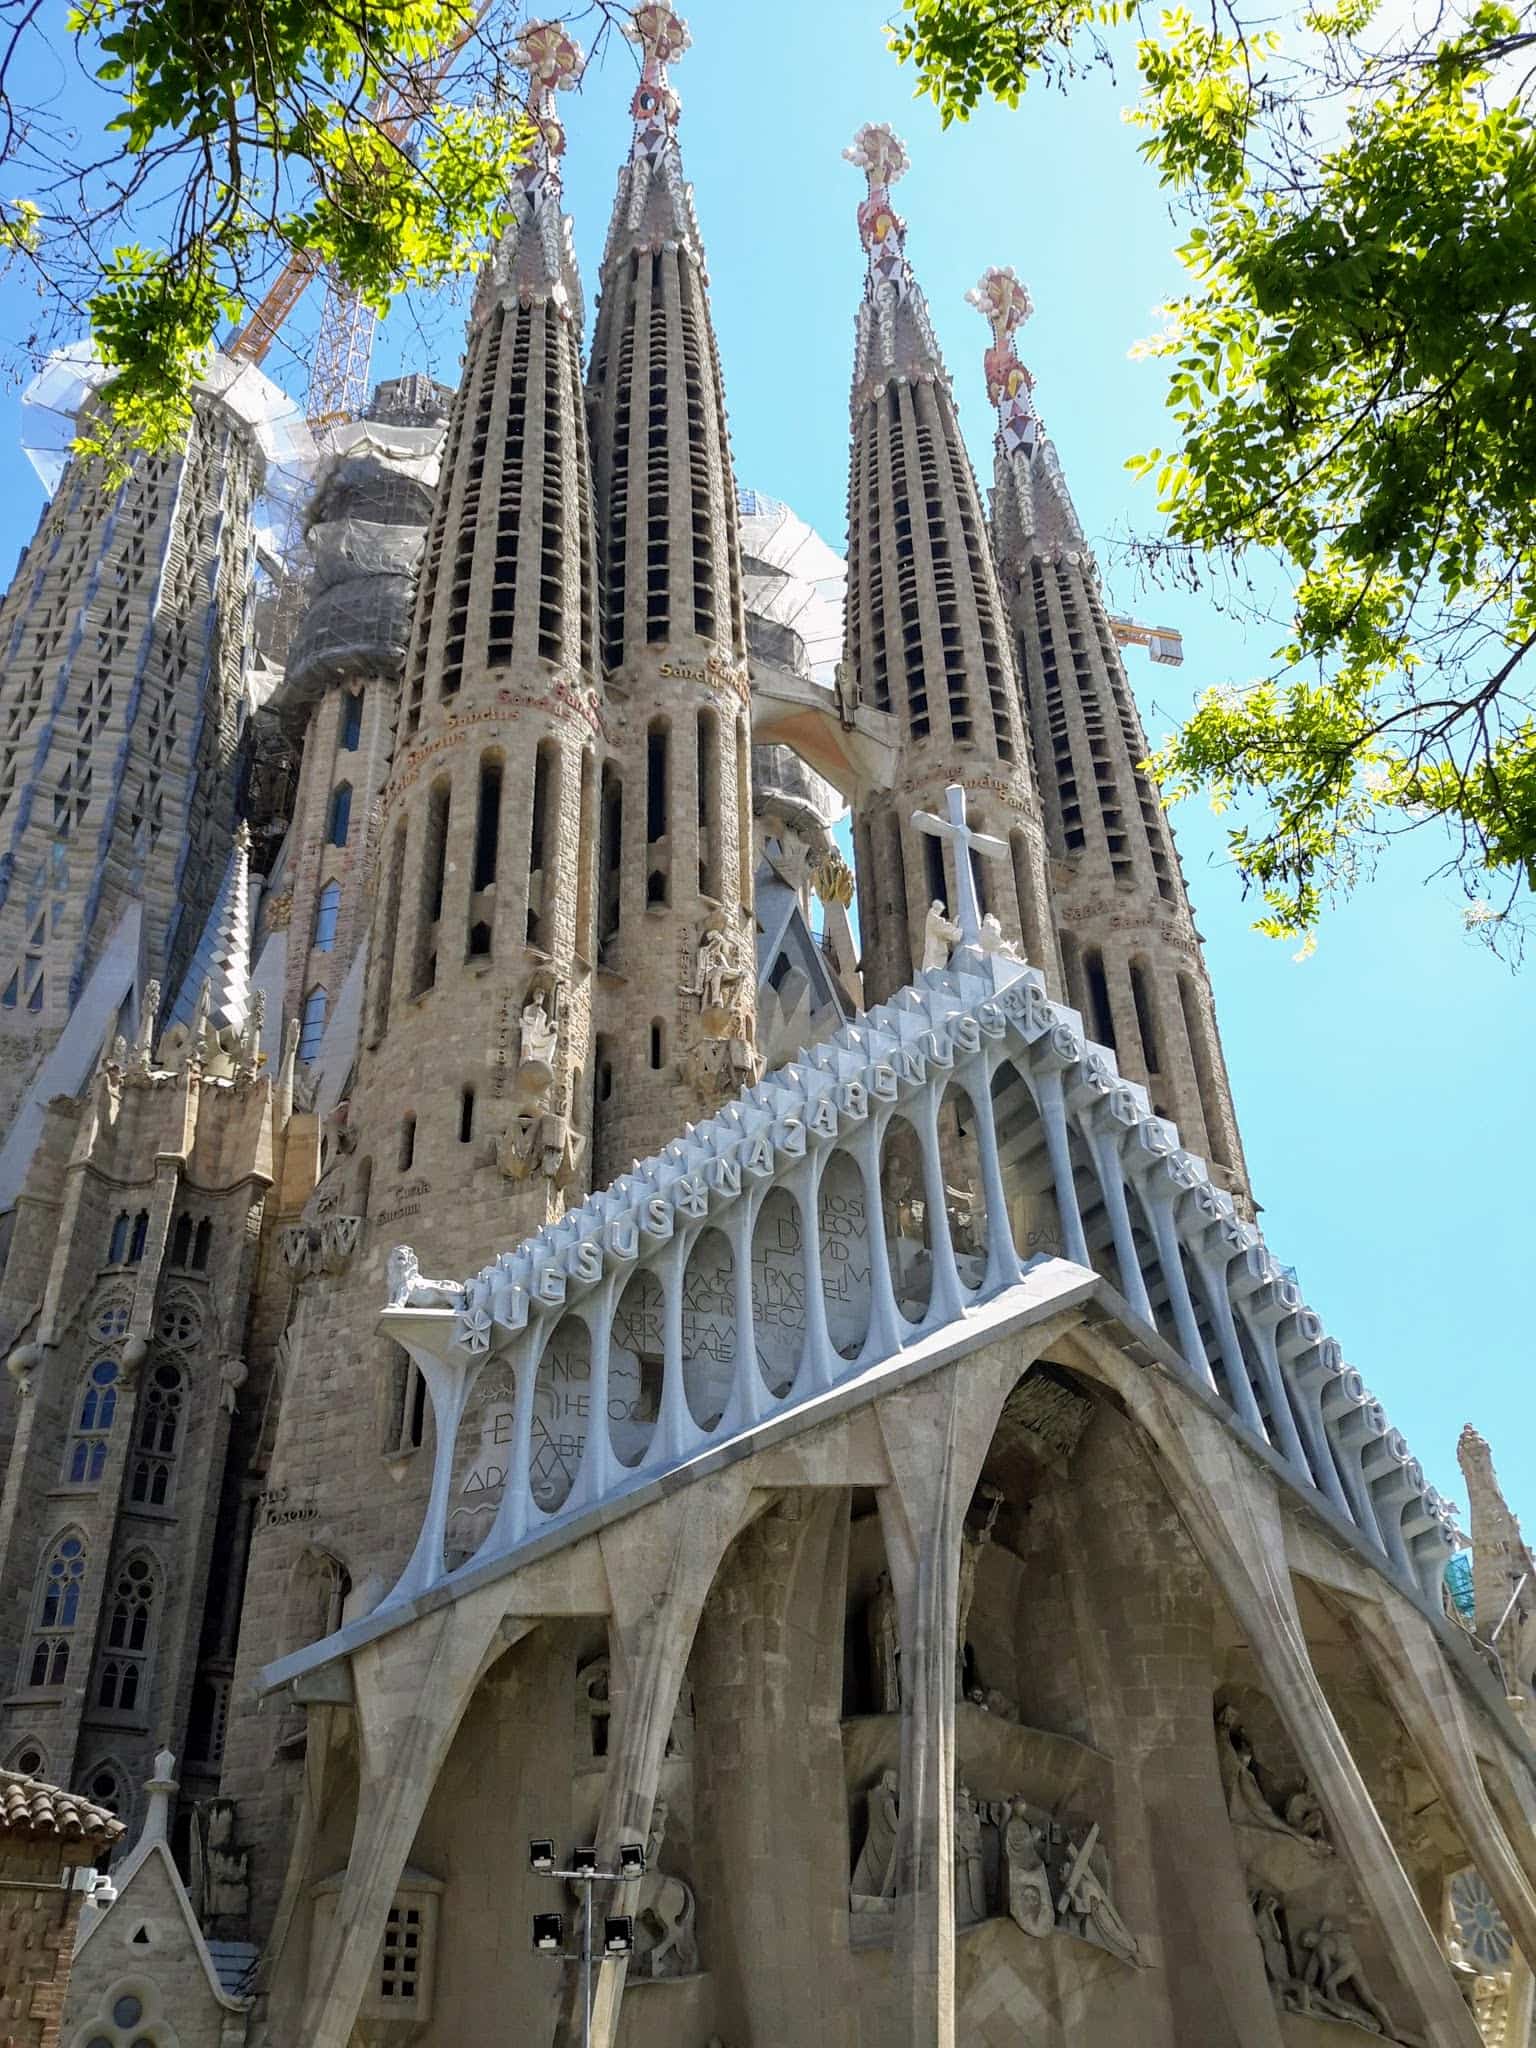 The Passion Facade of the Sagrada Familian in Barcelona Modernista Architecture @DownshiftingPRO